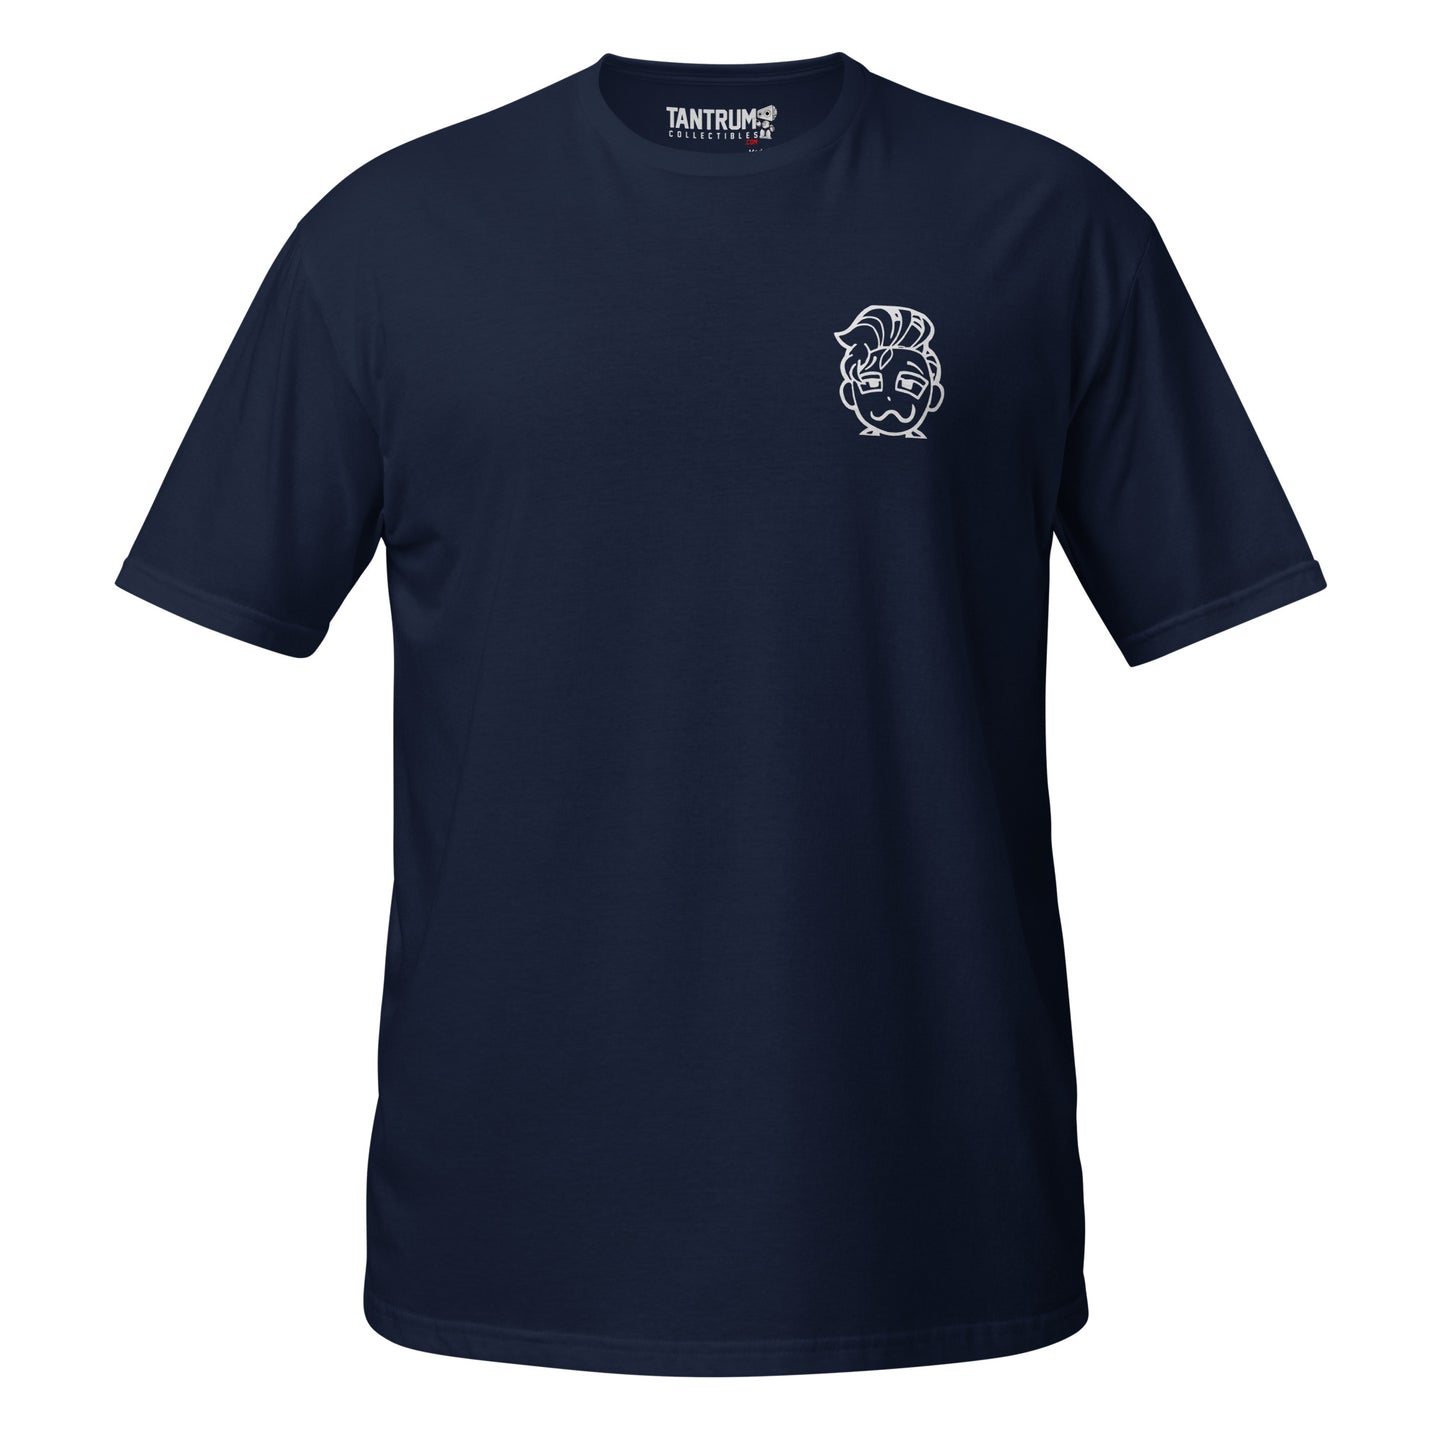 Keizaron - Short-Sleeve Unisex T-Shirt - Keiza Club